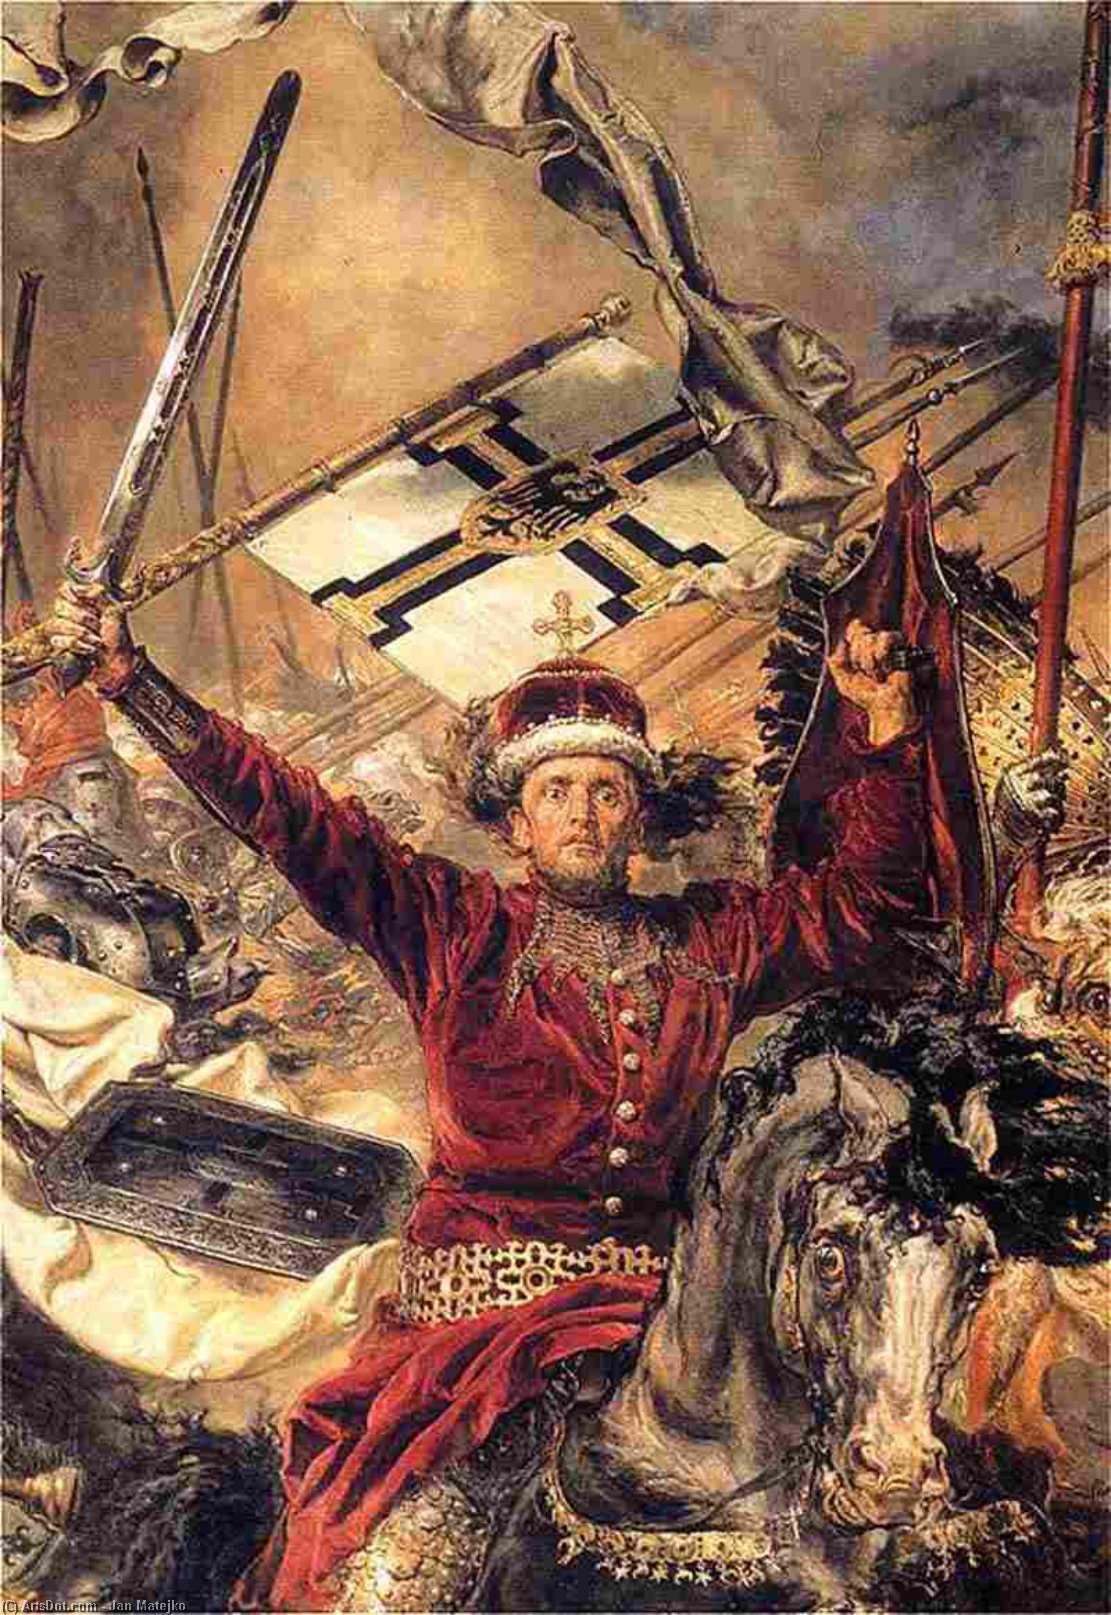 WikiOO.org - Encyclopedia of Fine Arts - Maleri, Artwork Jan Matejko - Battle of Grunwald (detail) (8)